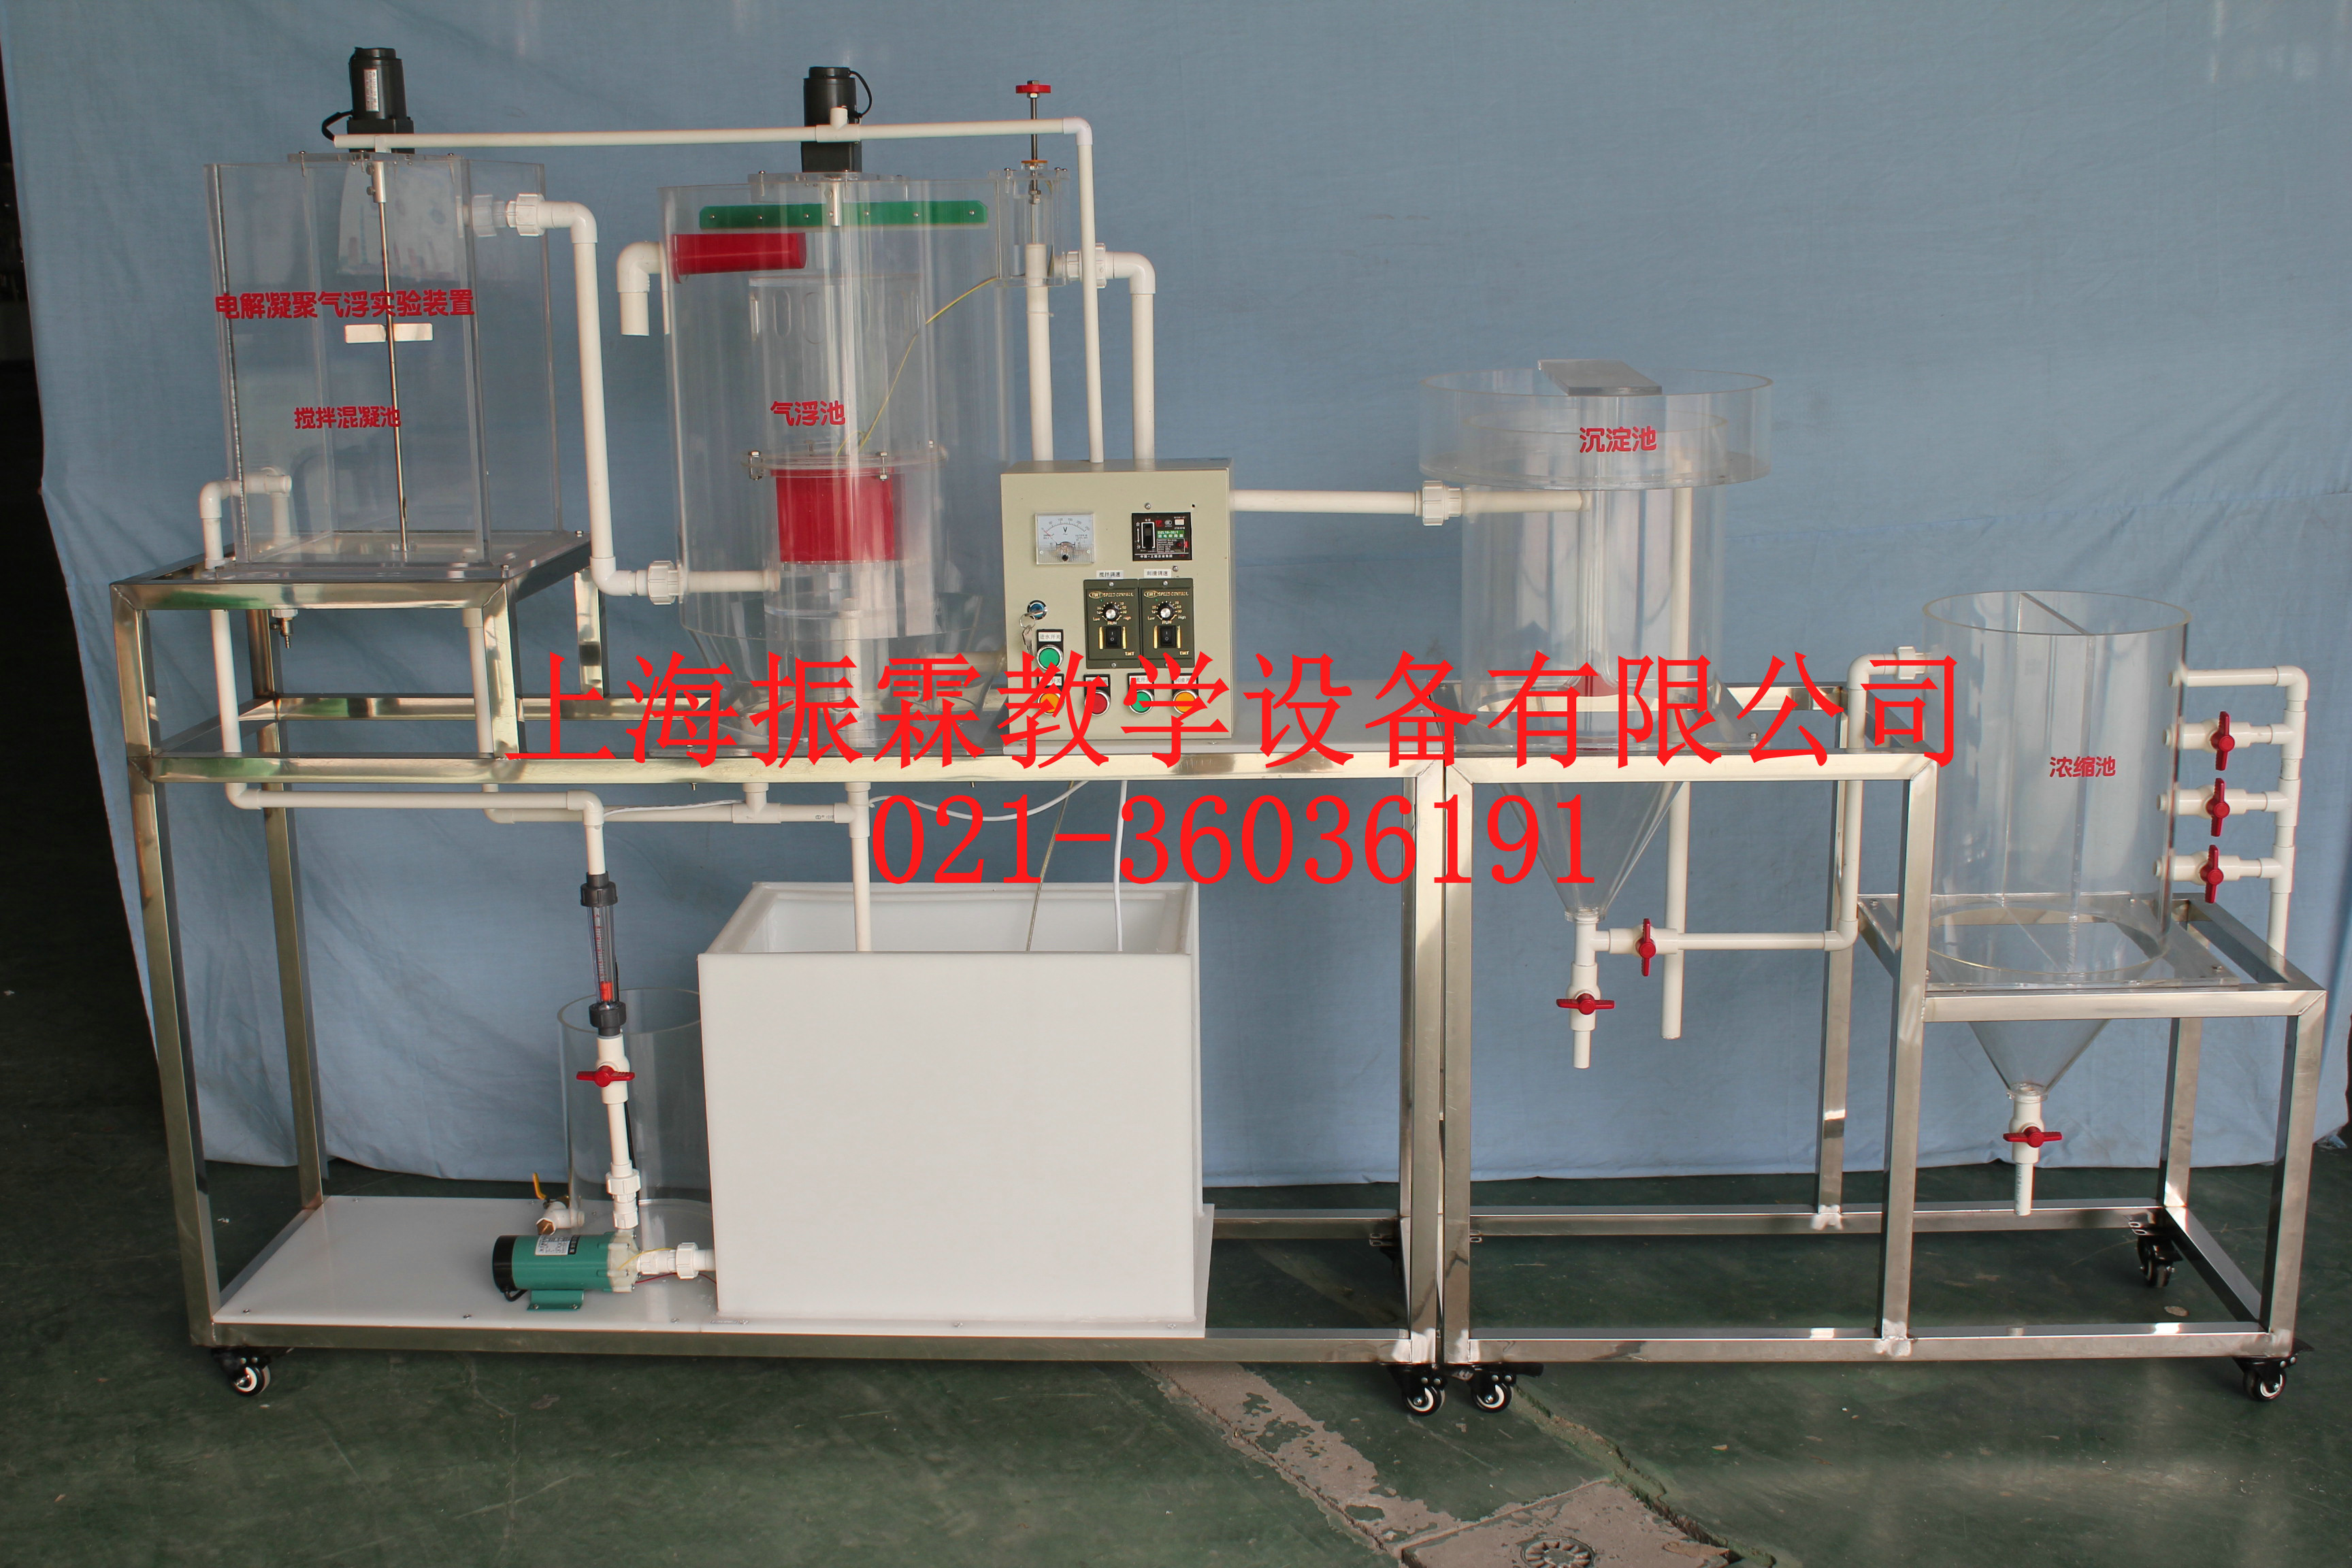 电解凝聚气浮实验装置,电解凝聚气浮实训设备,环境工程实验室设备--上海振霖公司